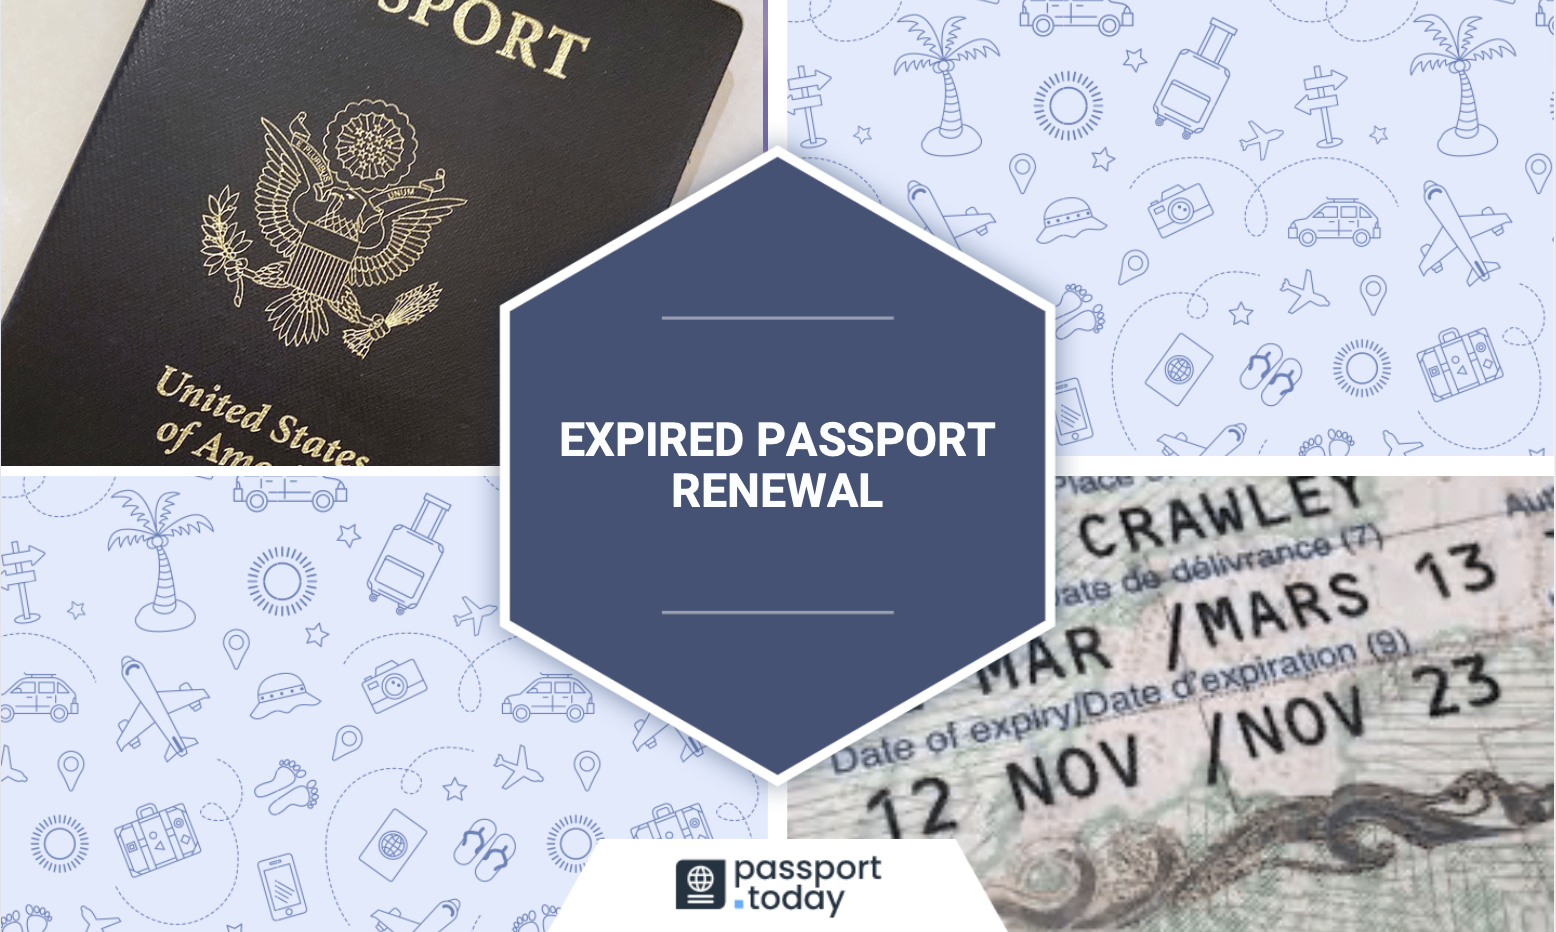 passport expired 1 month before travel